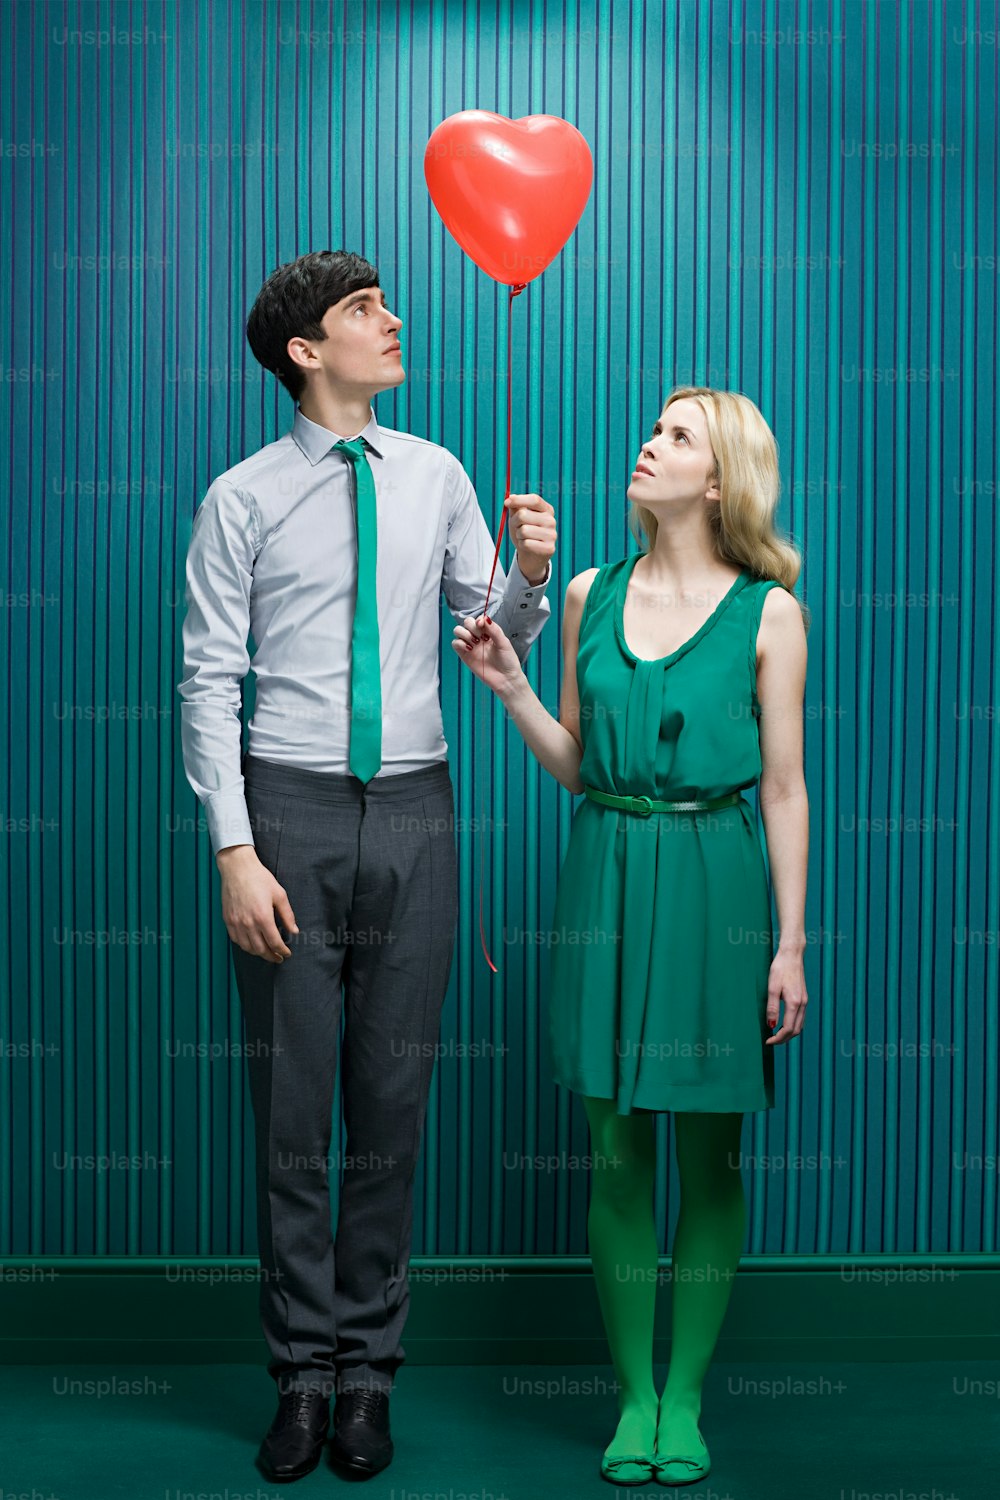 Ein Mann und eine Frau halten einen roten Herzballon in der Hand